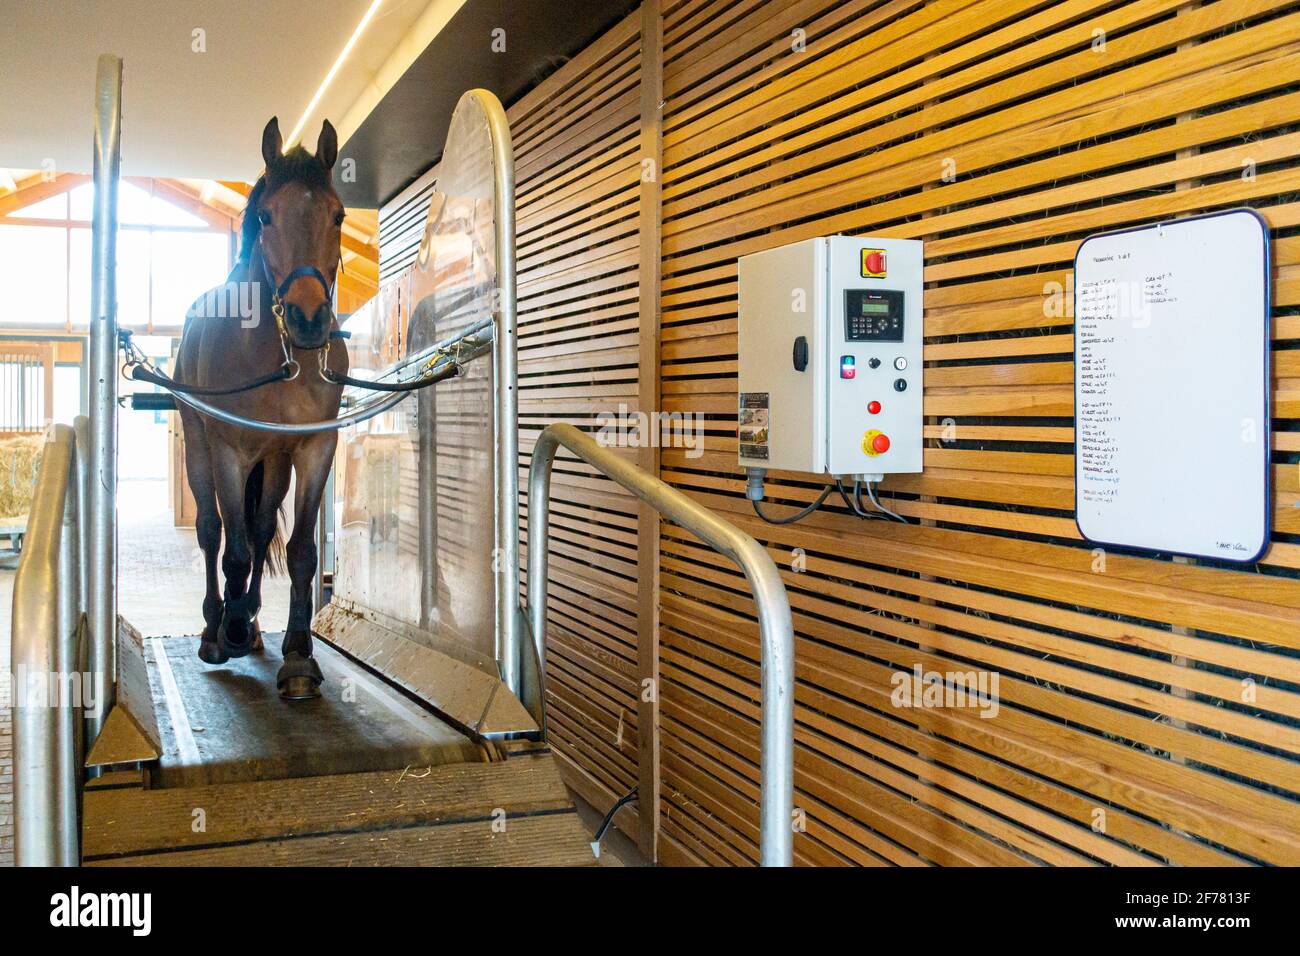 Horse treadmill immagini e fotografie stock ad alta risoluzione - Alamy